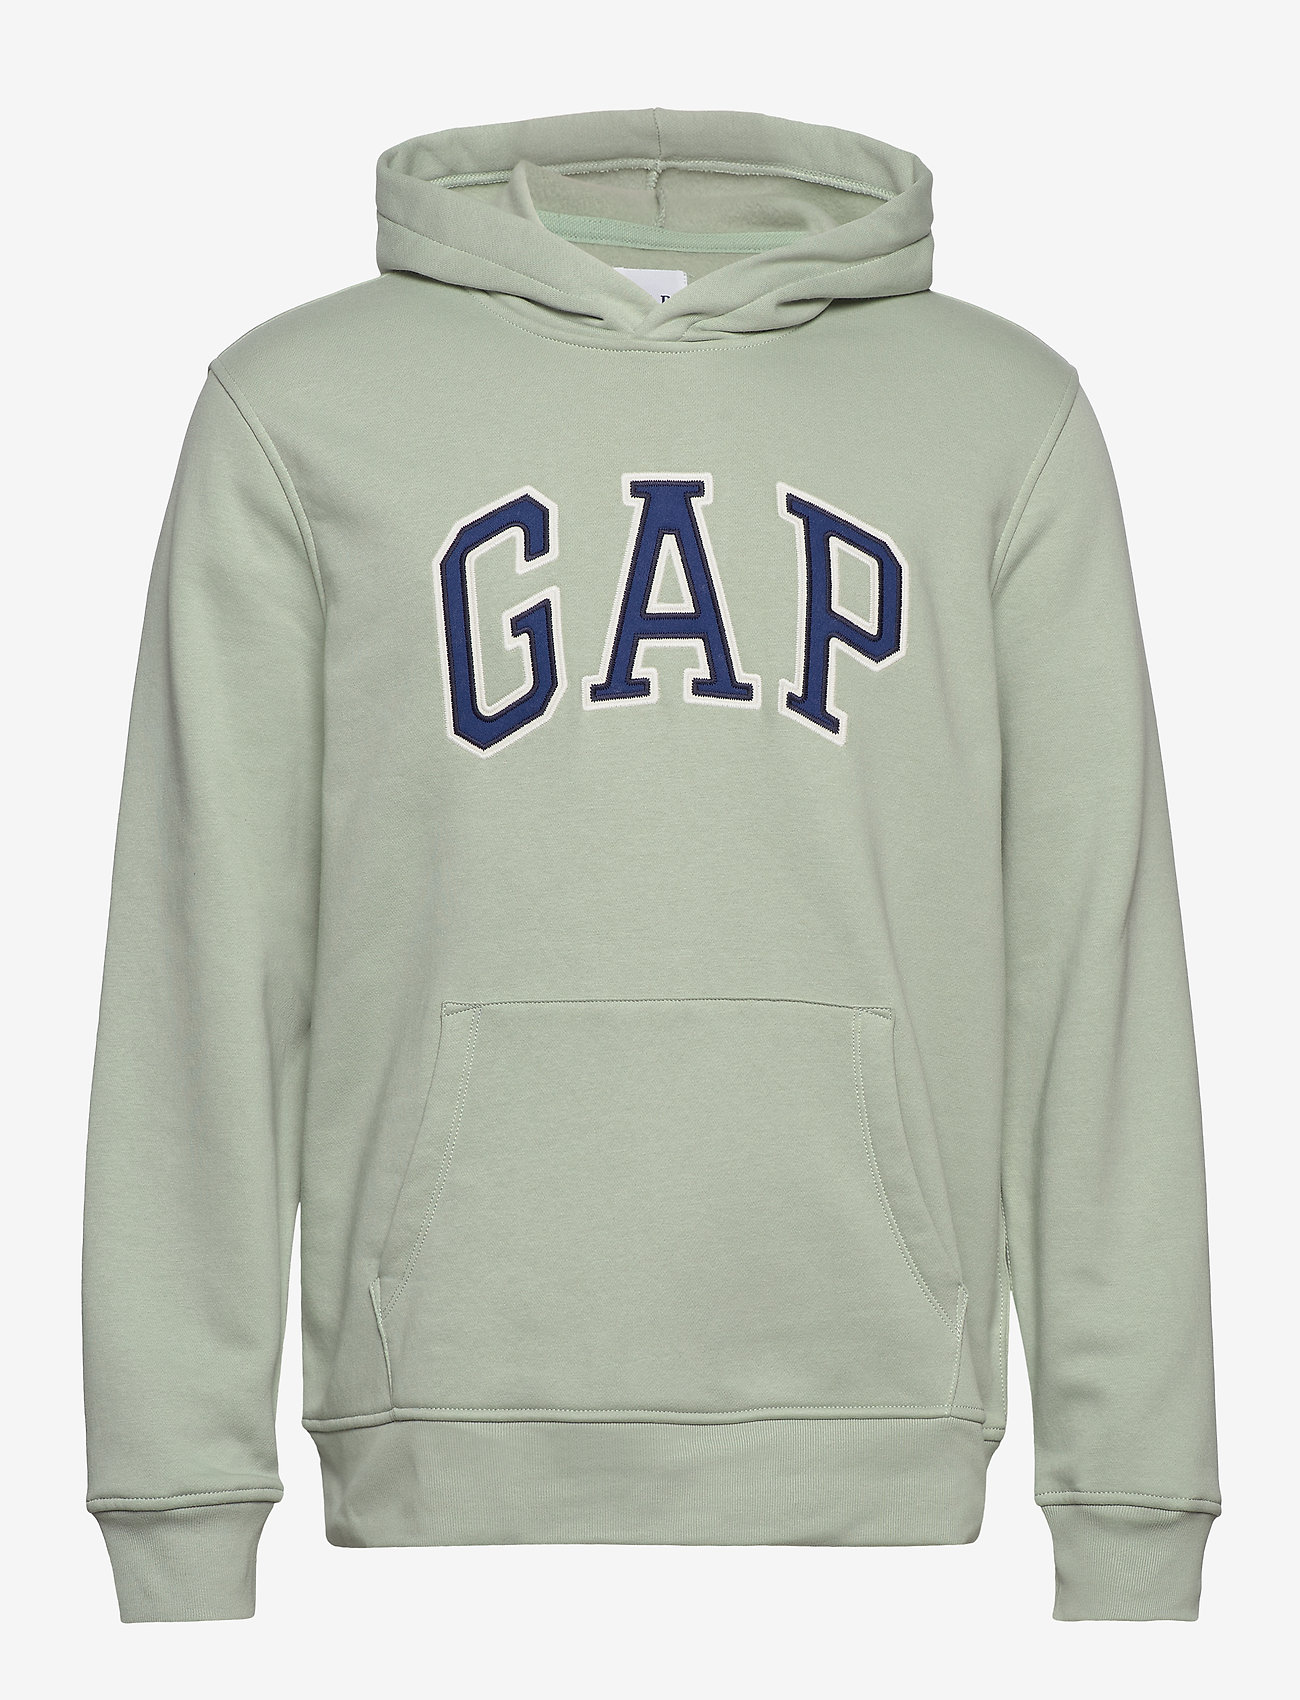 gap hoodies